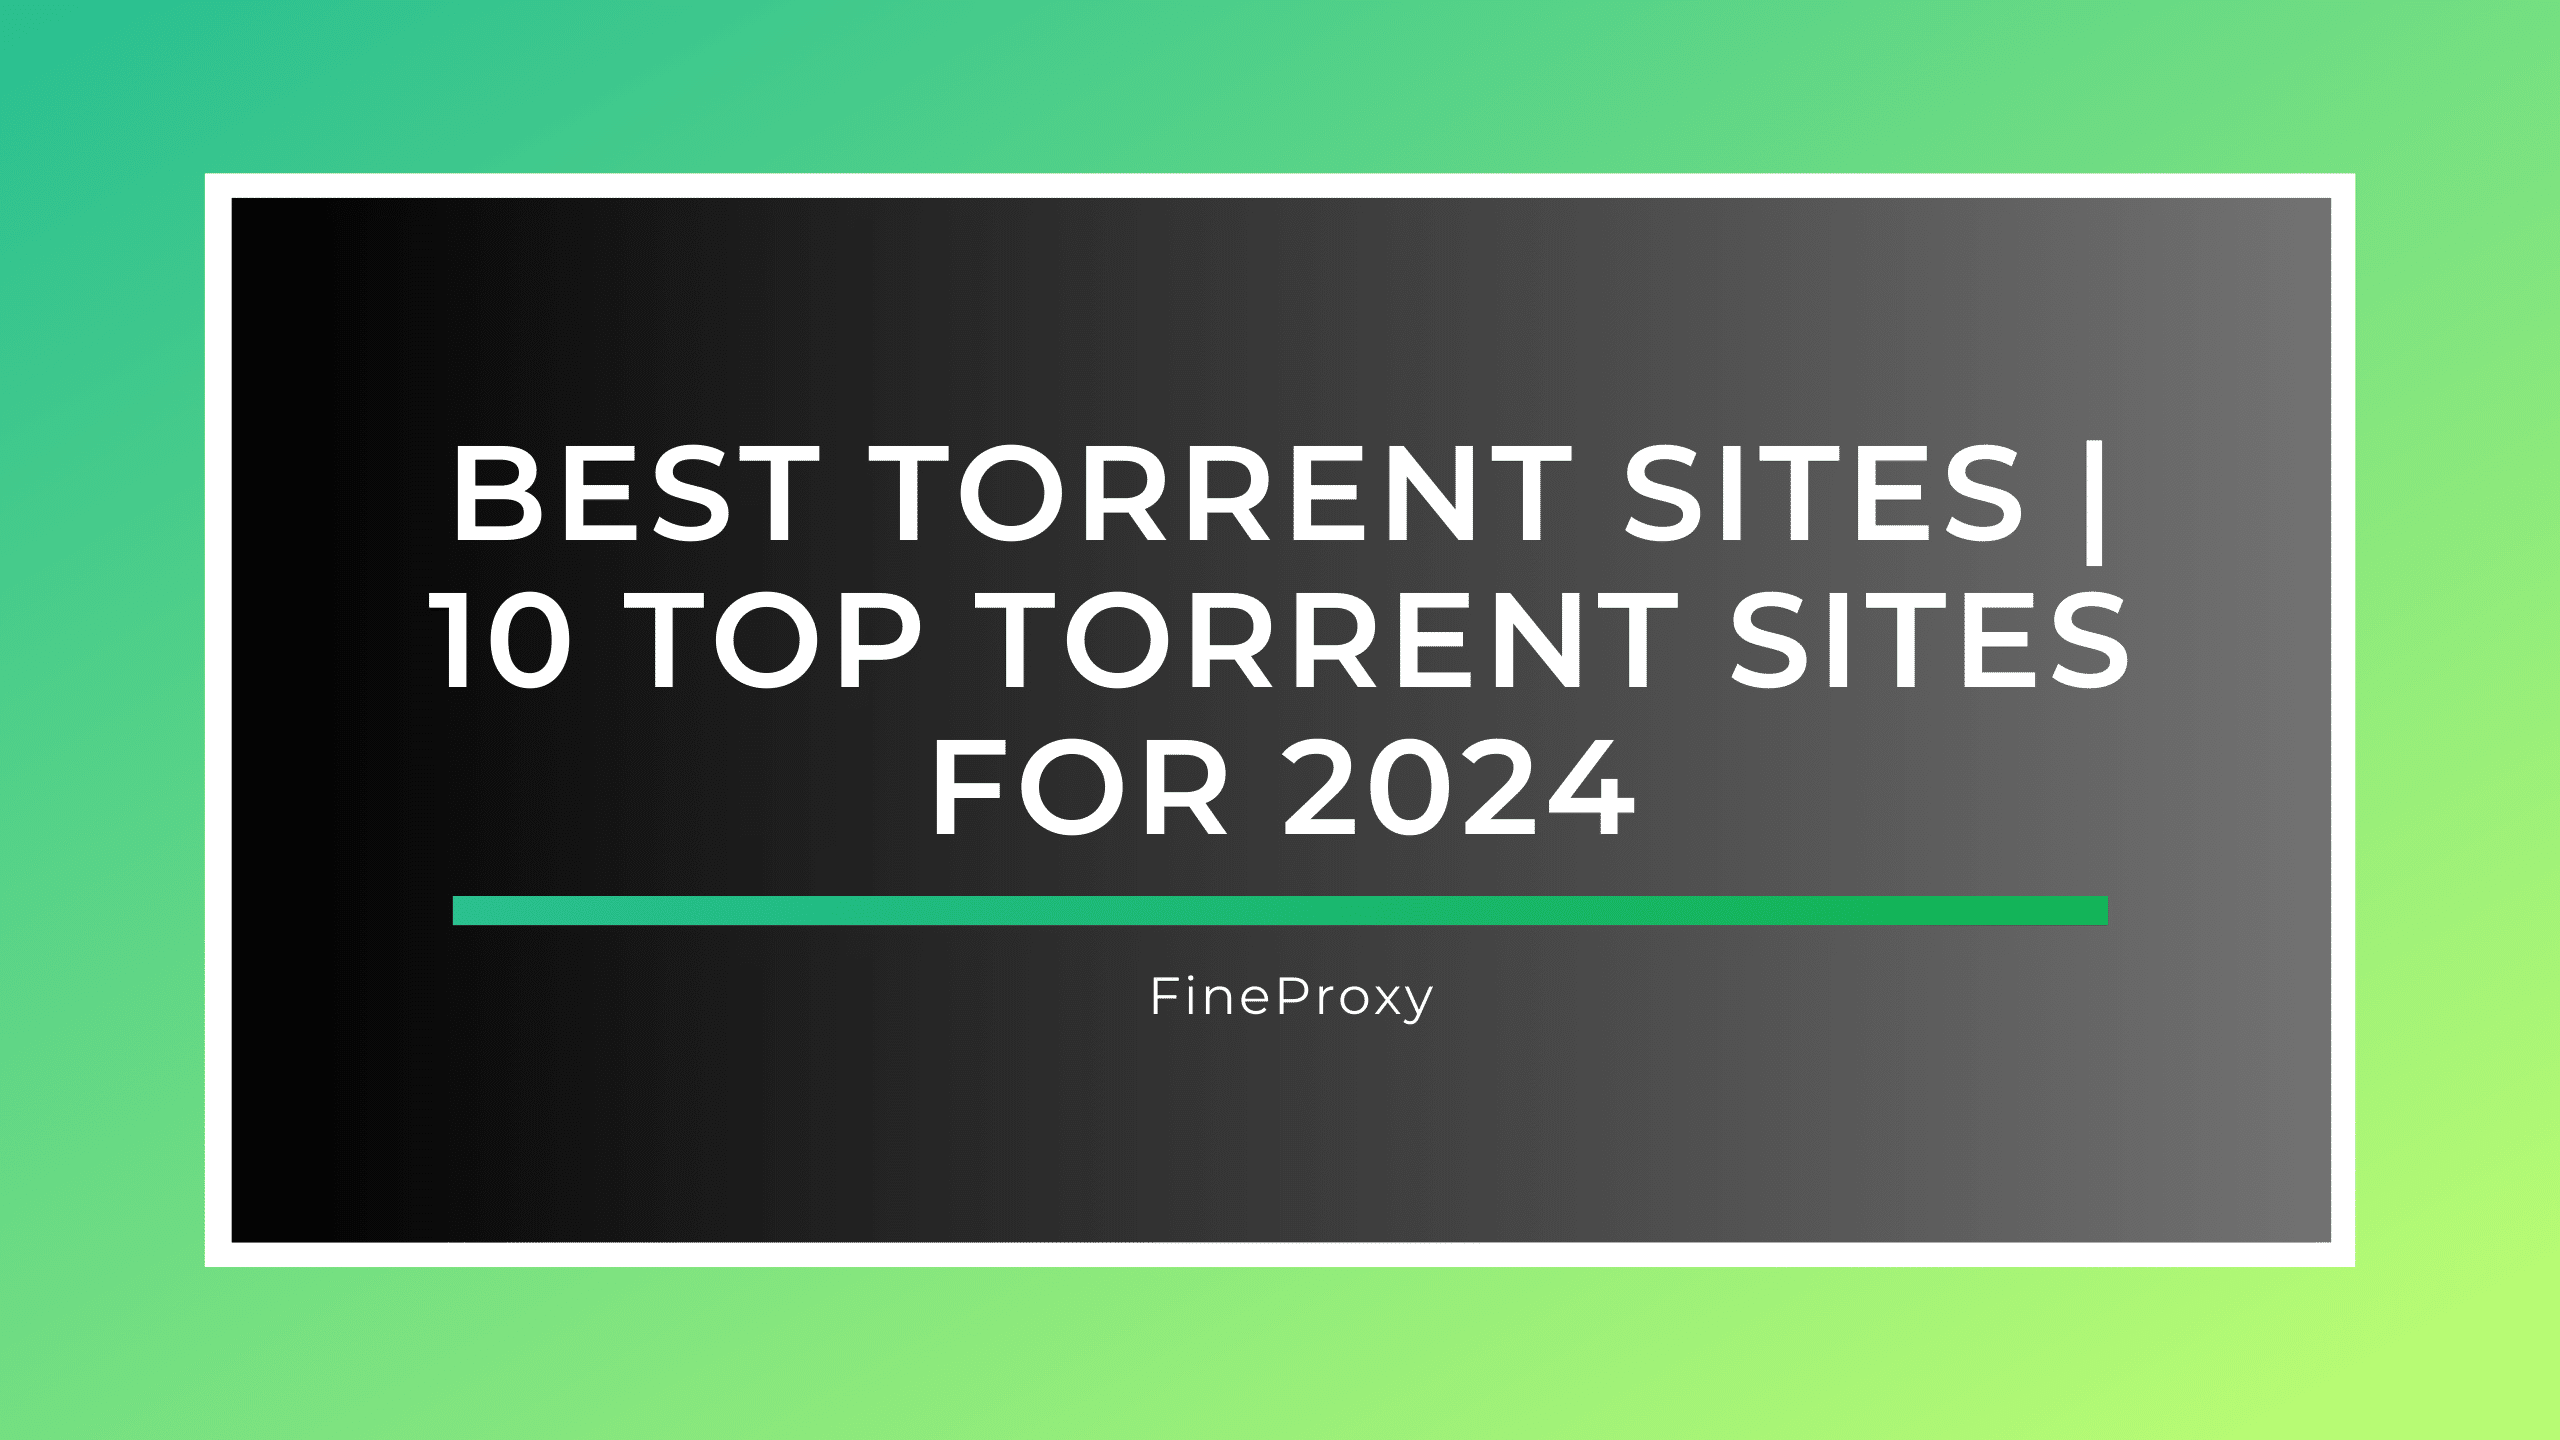 Nejlepší torrent stránky | 10 nejlepších torrentových stránek pro rok 2024